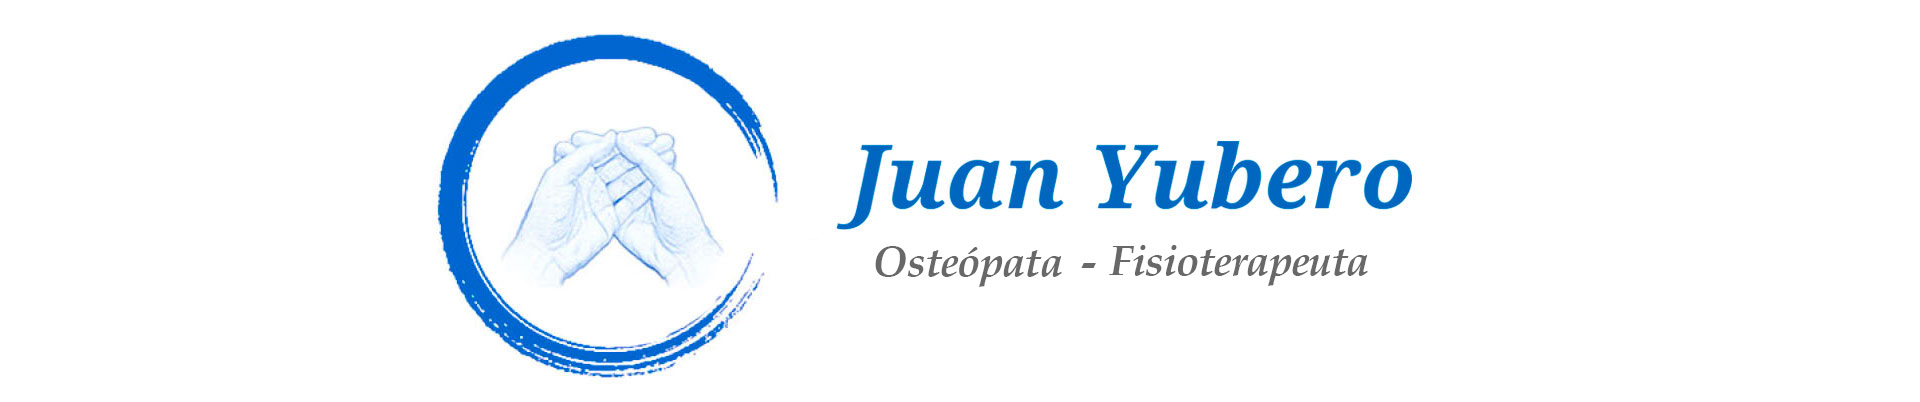 Juan Yubero